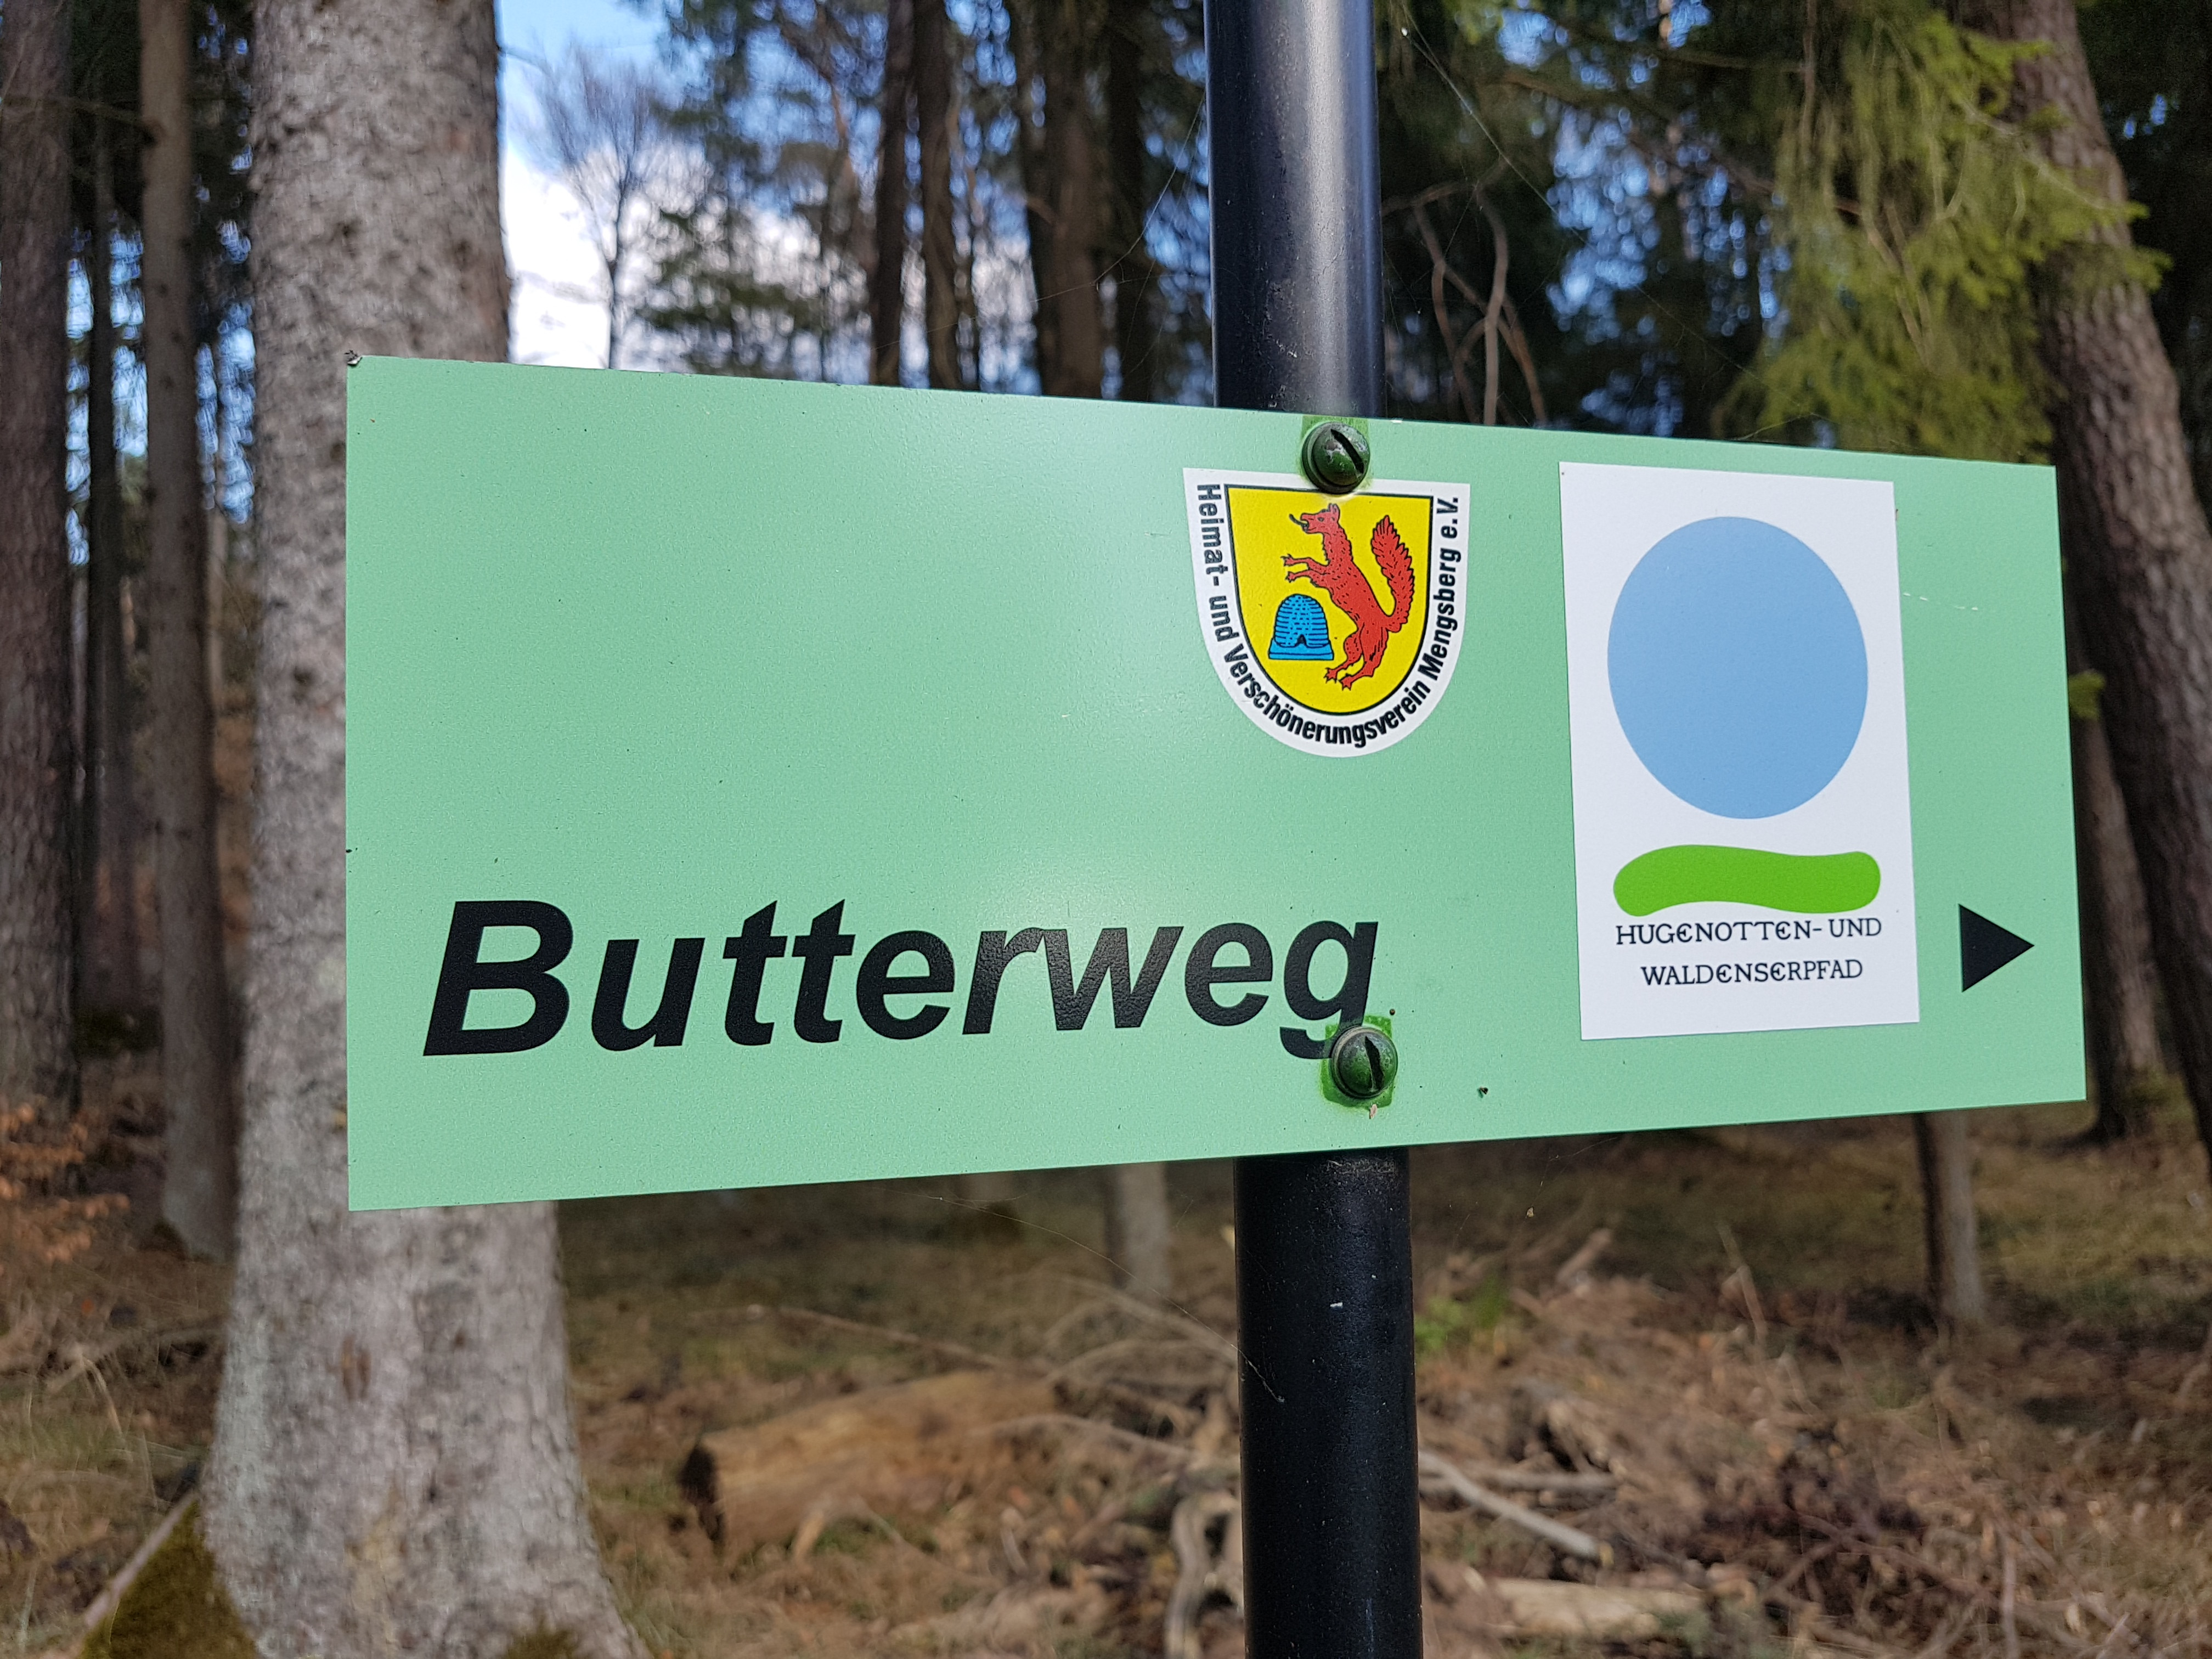 Wegzeichen Hugenotten- und Waldenserpfad und Butterweg